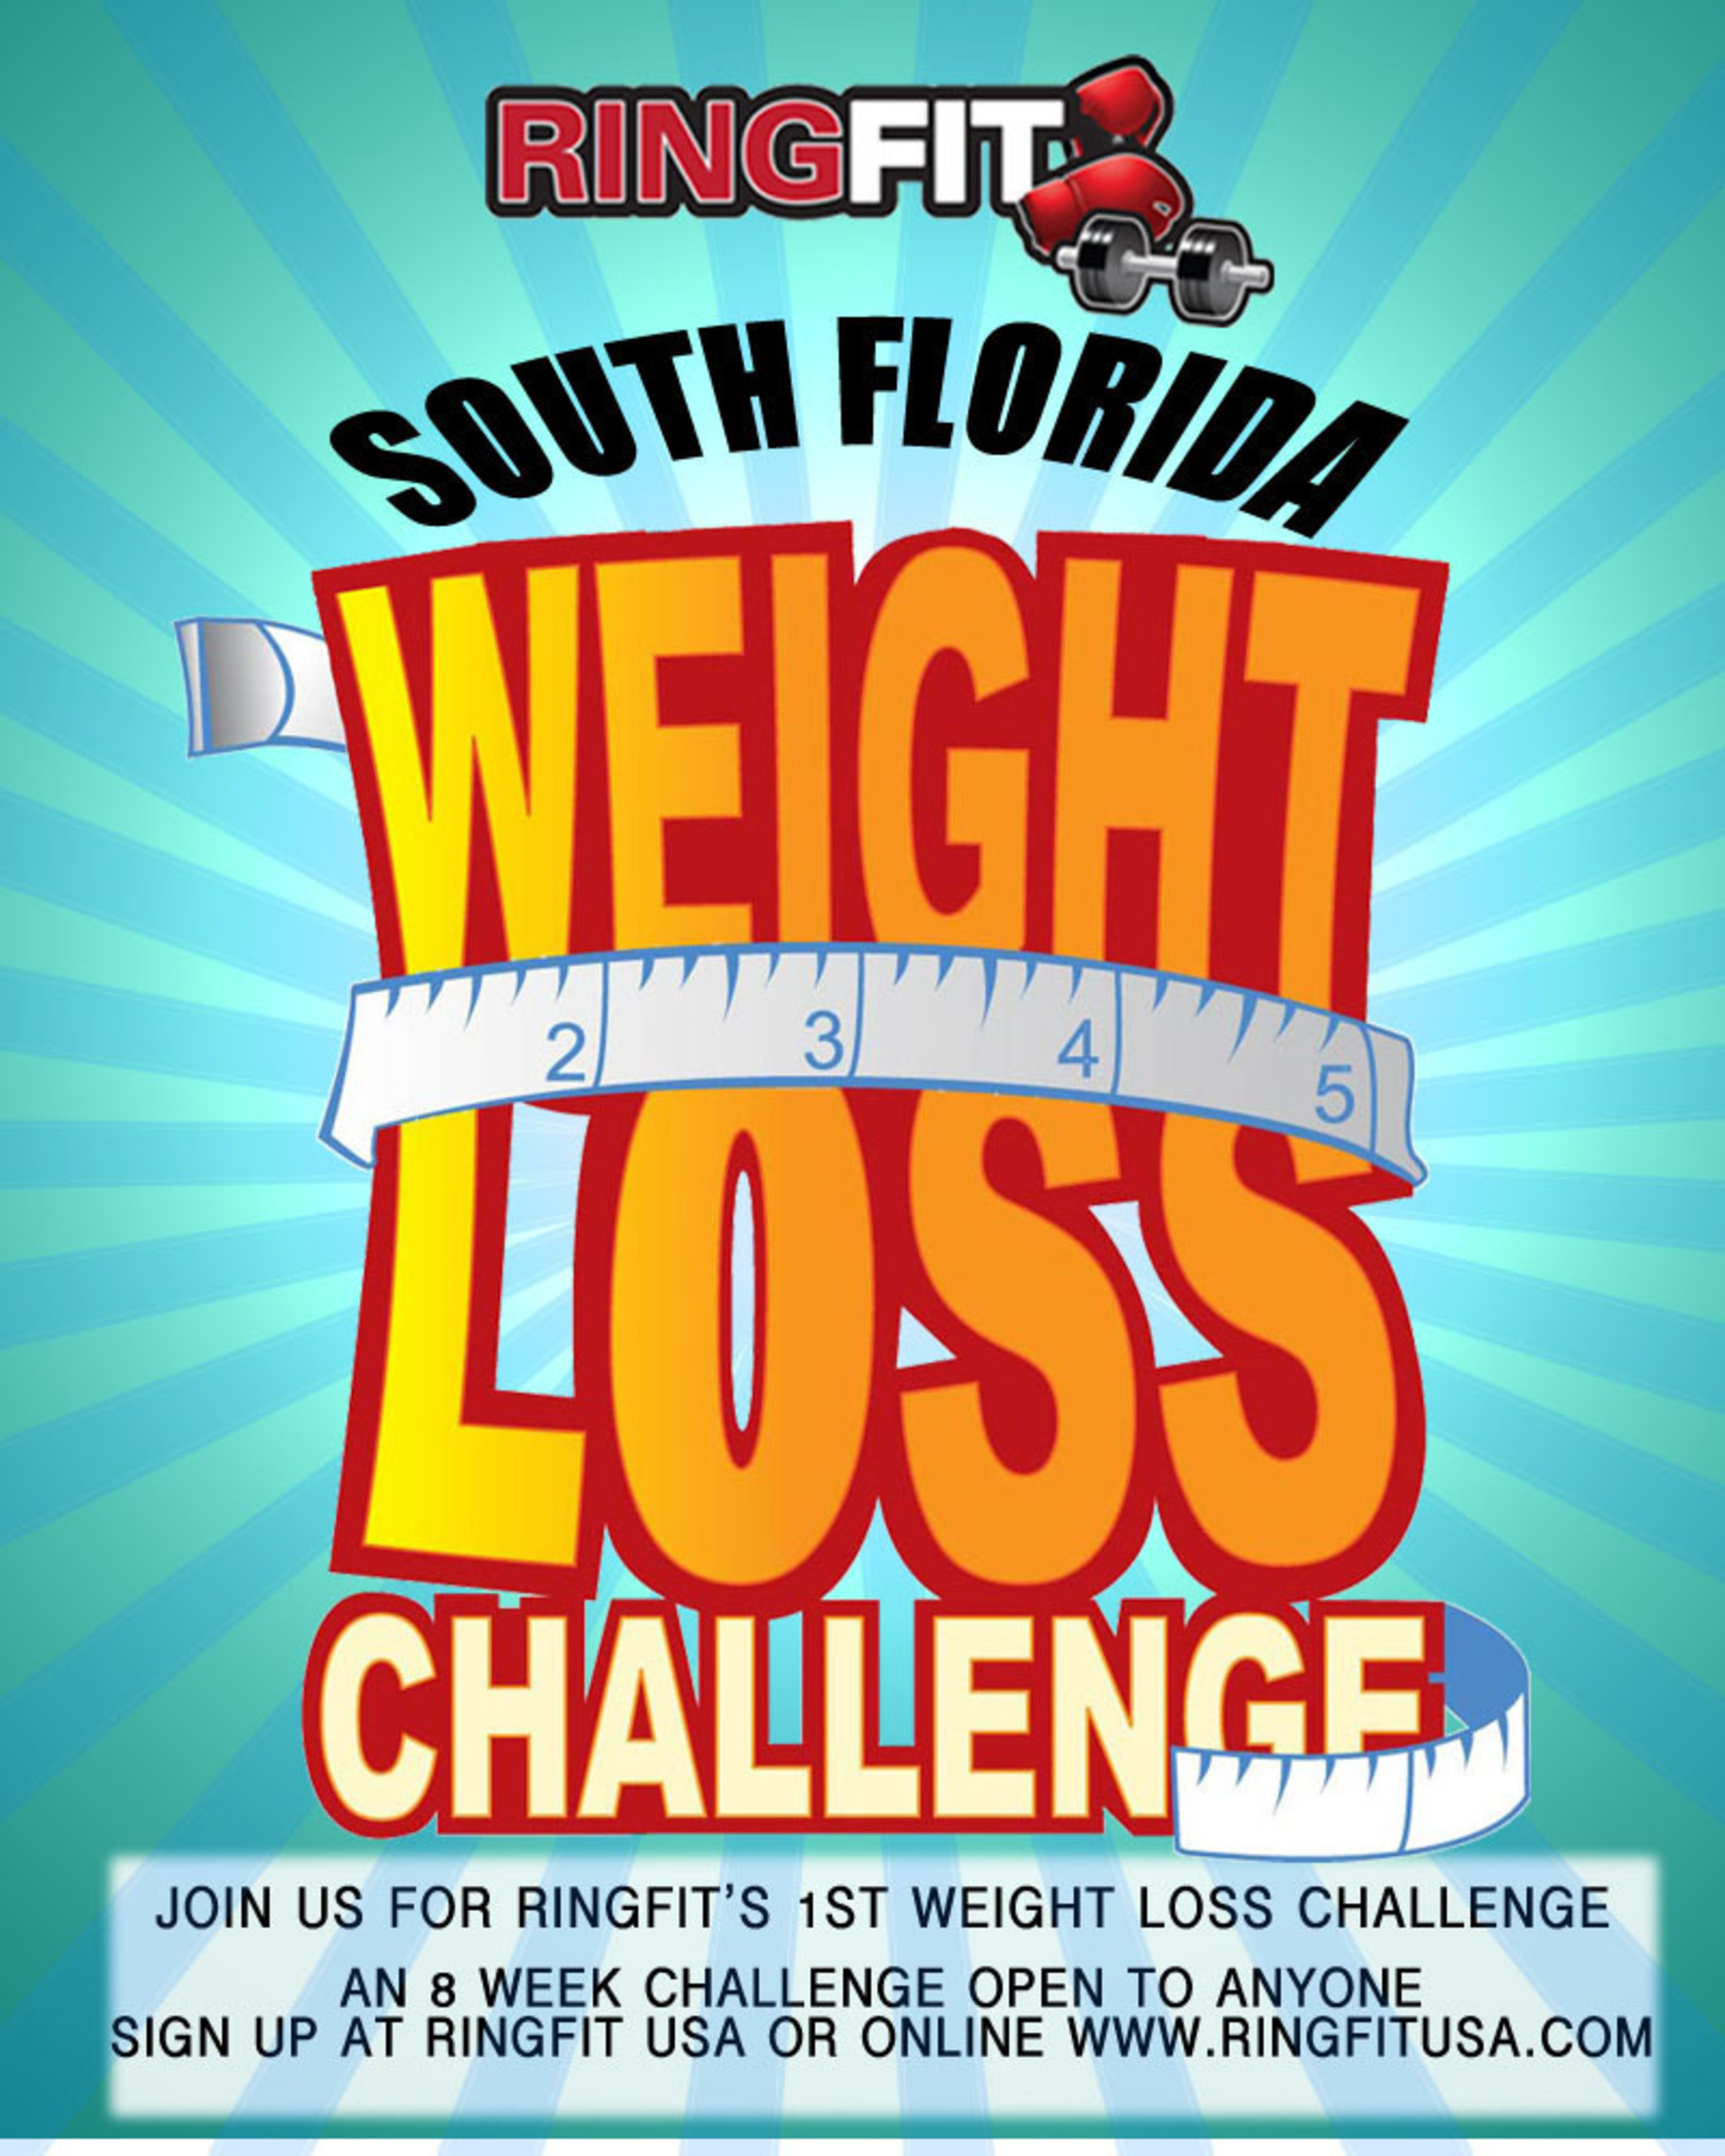 Weight Loss Challenge. (PRNewsFoto/RingFit USA) (PRNewsFoto/RINGFIT USA)